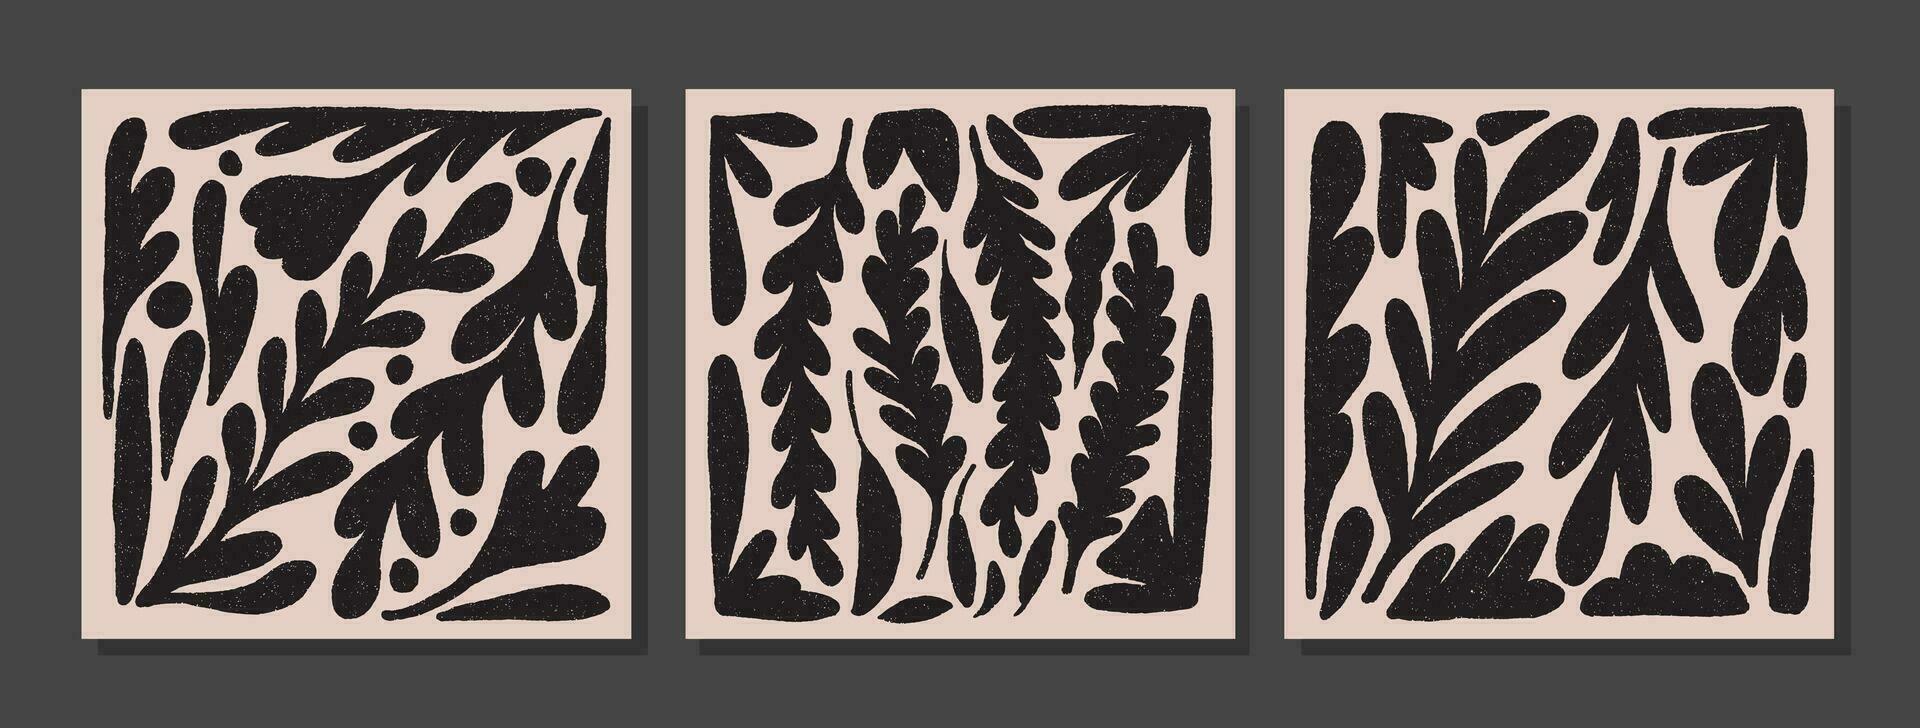 uppsättning av vägg konst med växter silhuetter. collage med lockigt grenar med grunge textur. retro stil abstrakt minimalistisk konst mural illustration. samling av enkel blommig mönster vektor